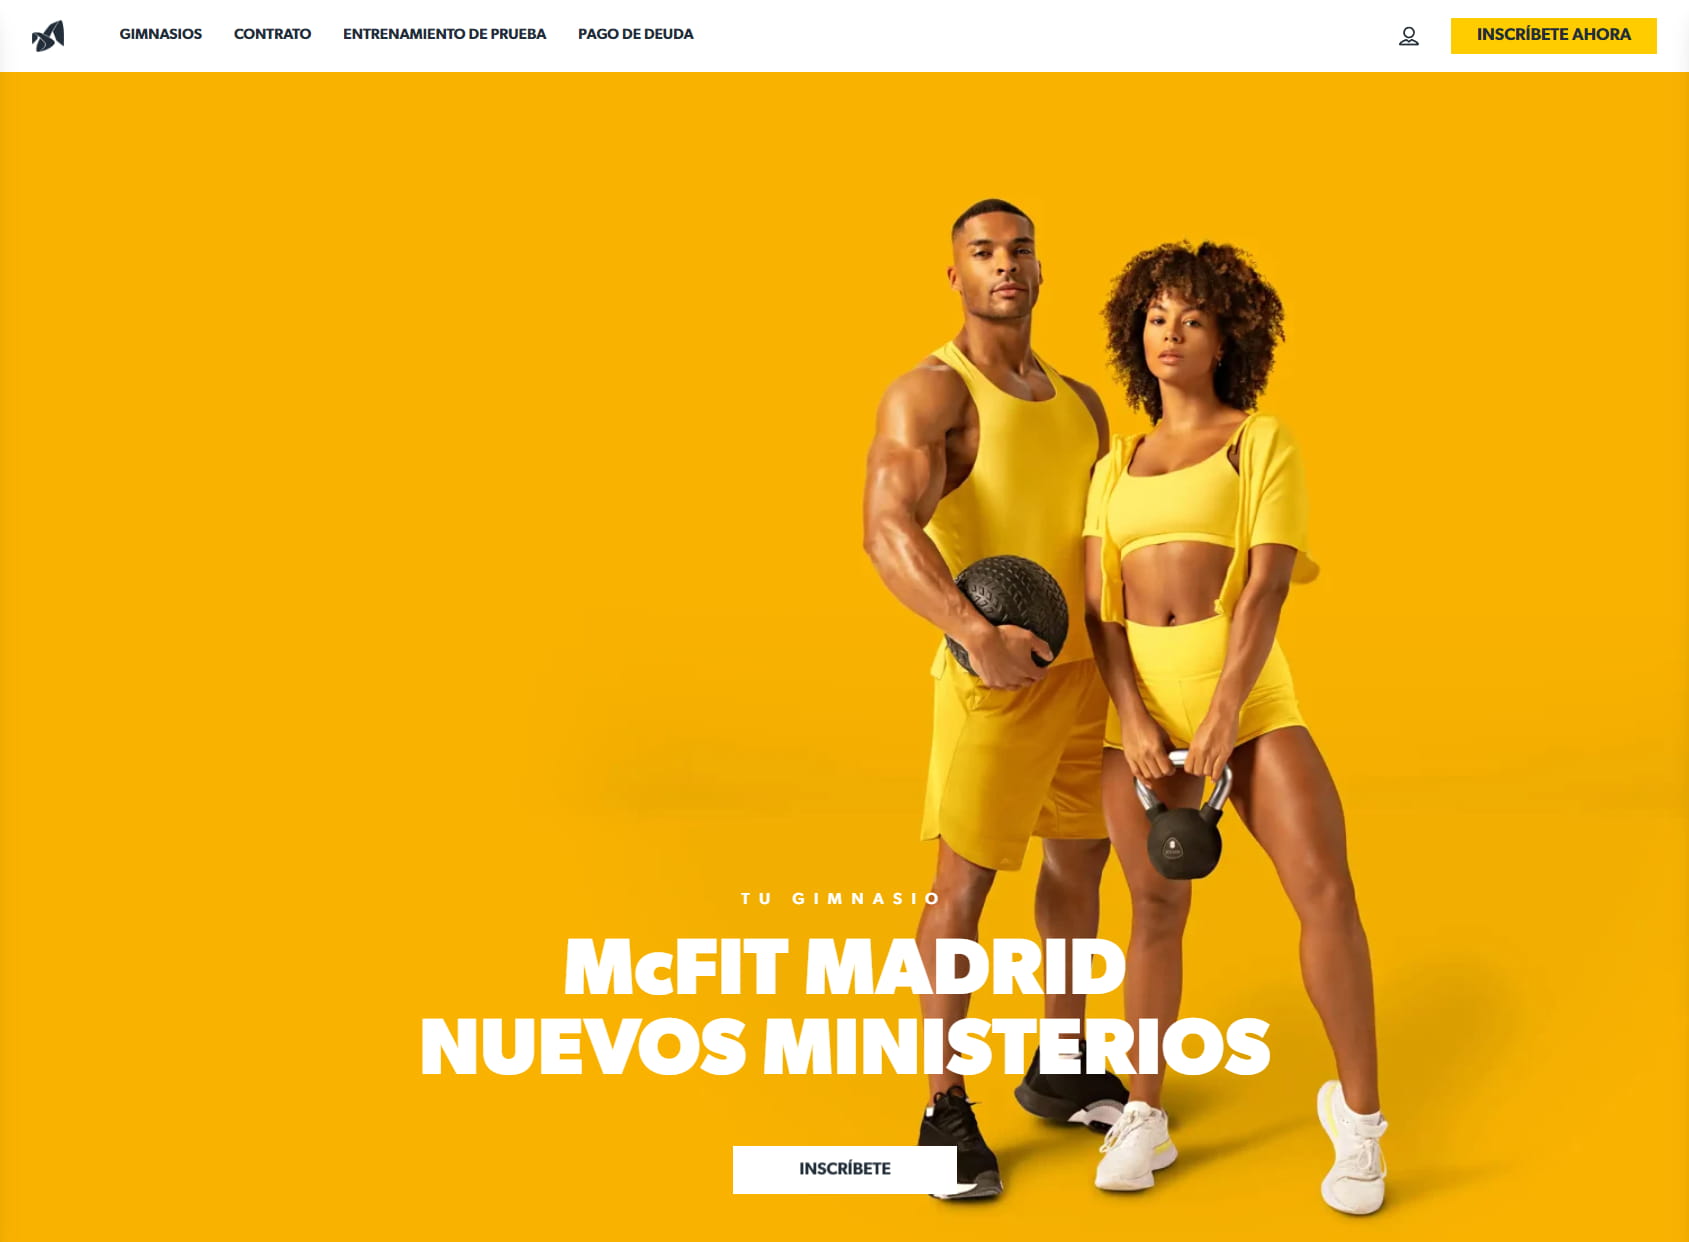 Gimnasio McFIT Madrid - Nuevos Ministerios